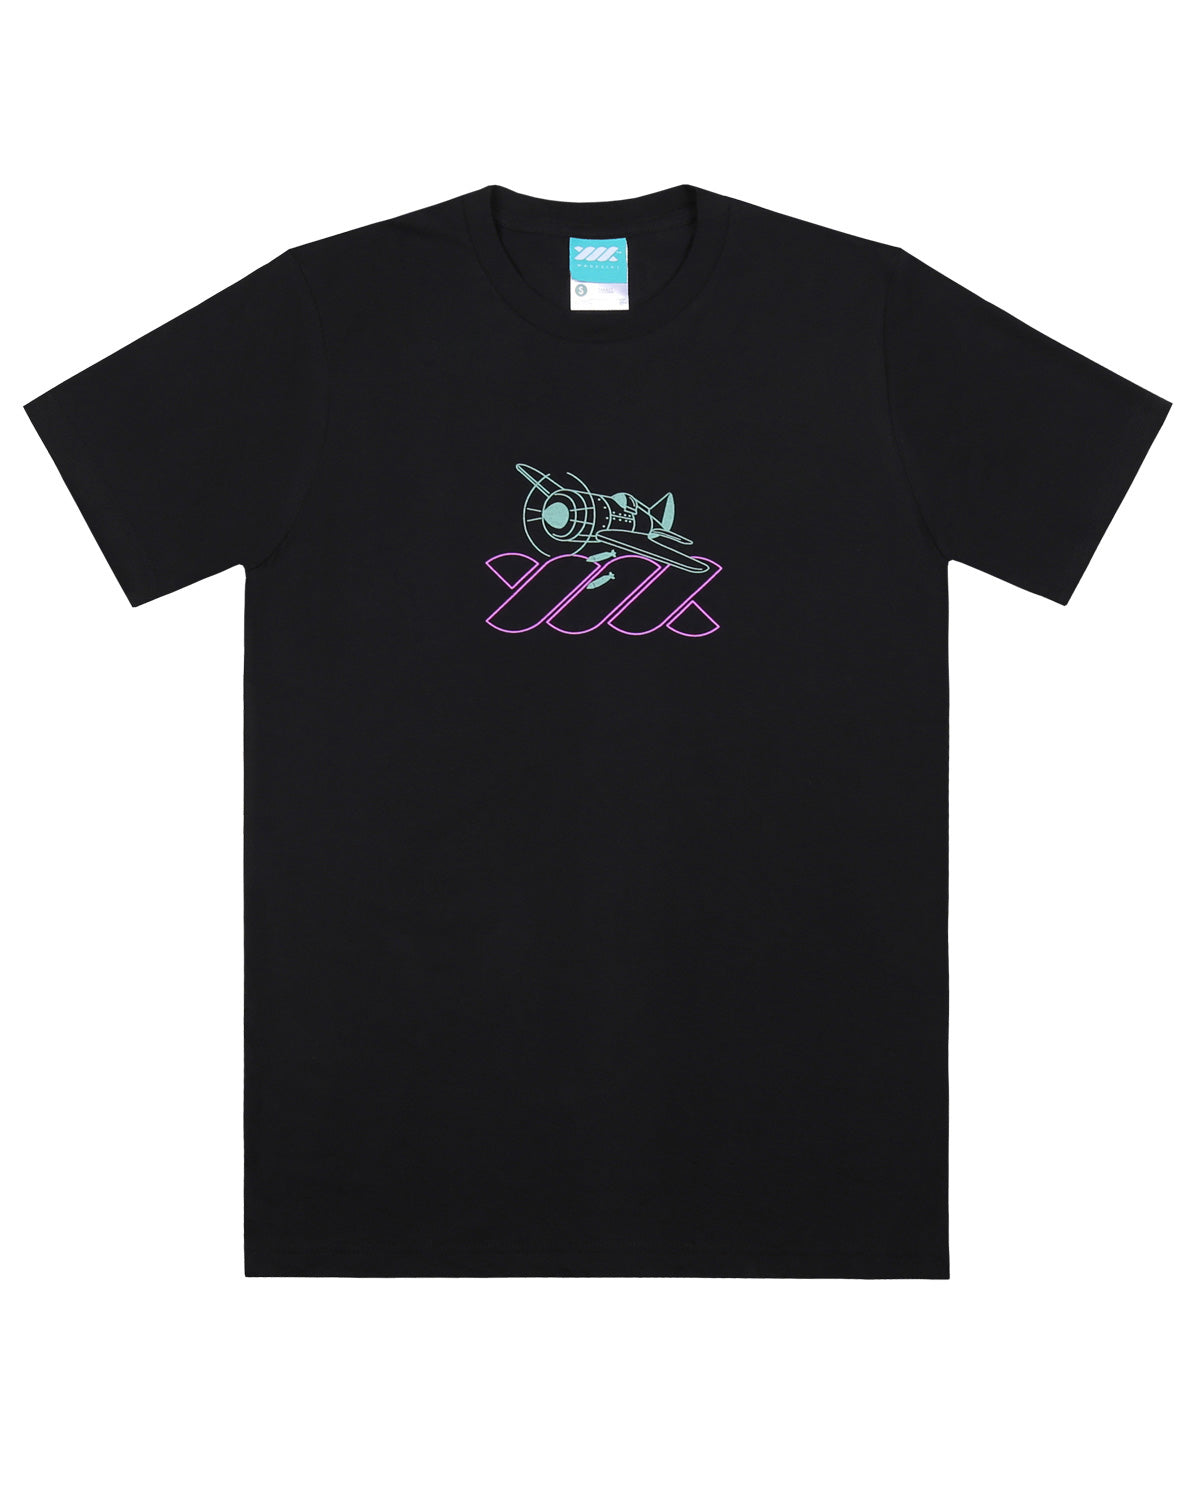 Wadezig! T-Shirt - Noize Black